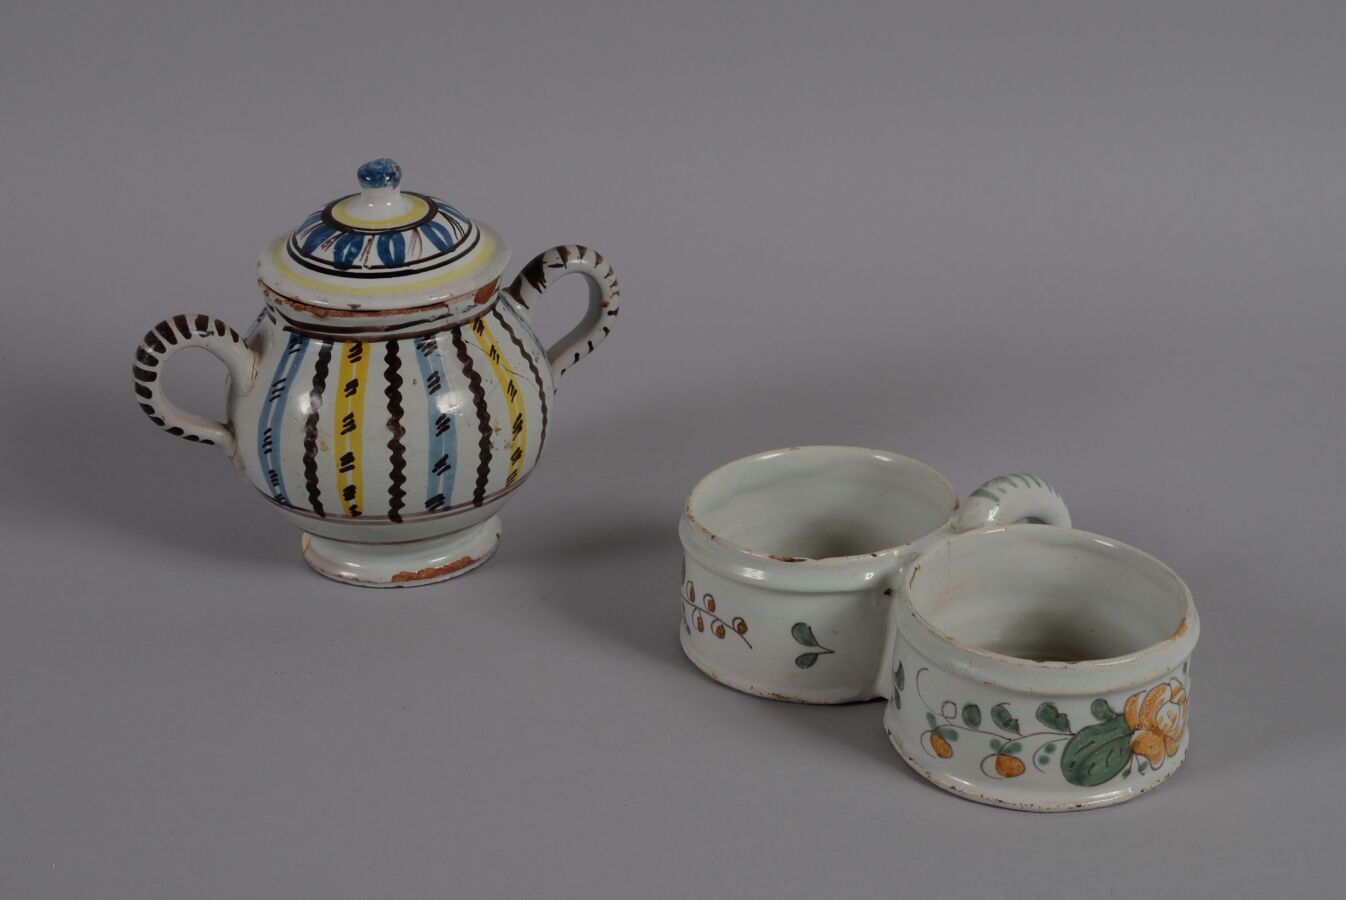 Null NIVERNAIS
多色陶器盖罐，有两个把手。
18世纪晚期
高15厘米
裂缝和碎片
多色陶器油壶，有花纹装饰。
18世纪
高5厘米
薯片